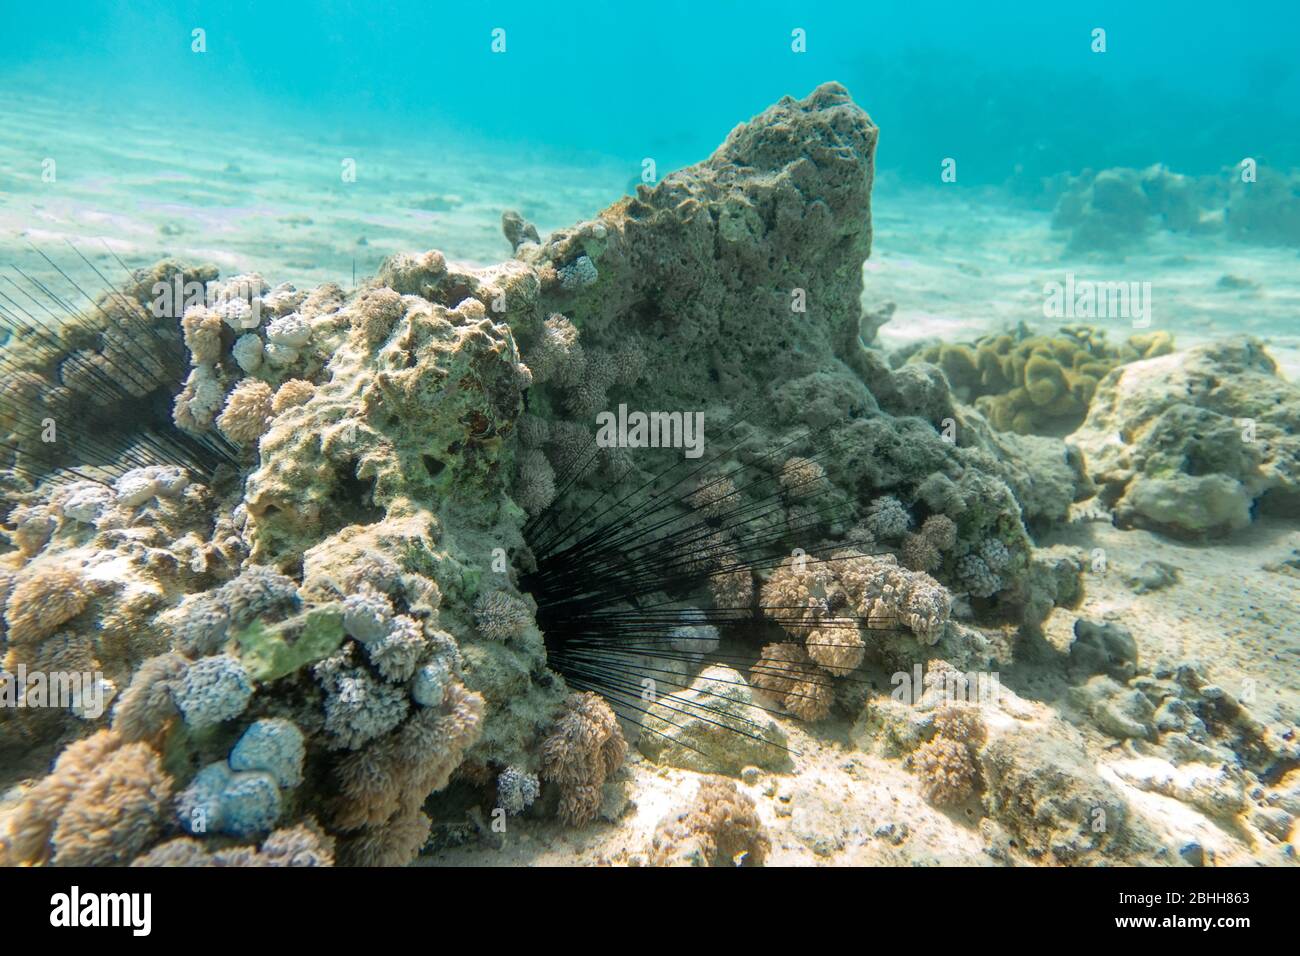 Lunghe spine di riccio di mare (Diadema setosum) Hiden nelle rocce e sabbia. Fondali vicino Coral Reef, acque cristalline turchesi. Pericoloso subacqueo A. Foto Stock